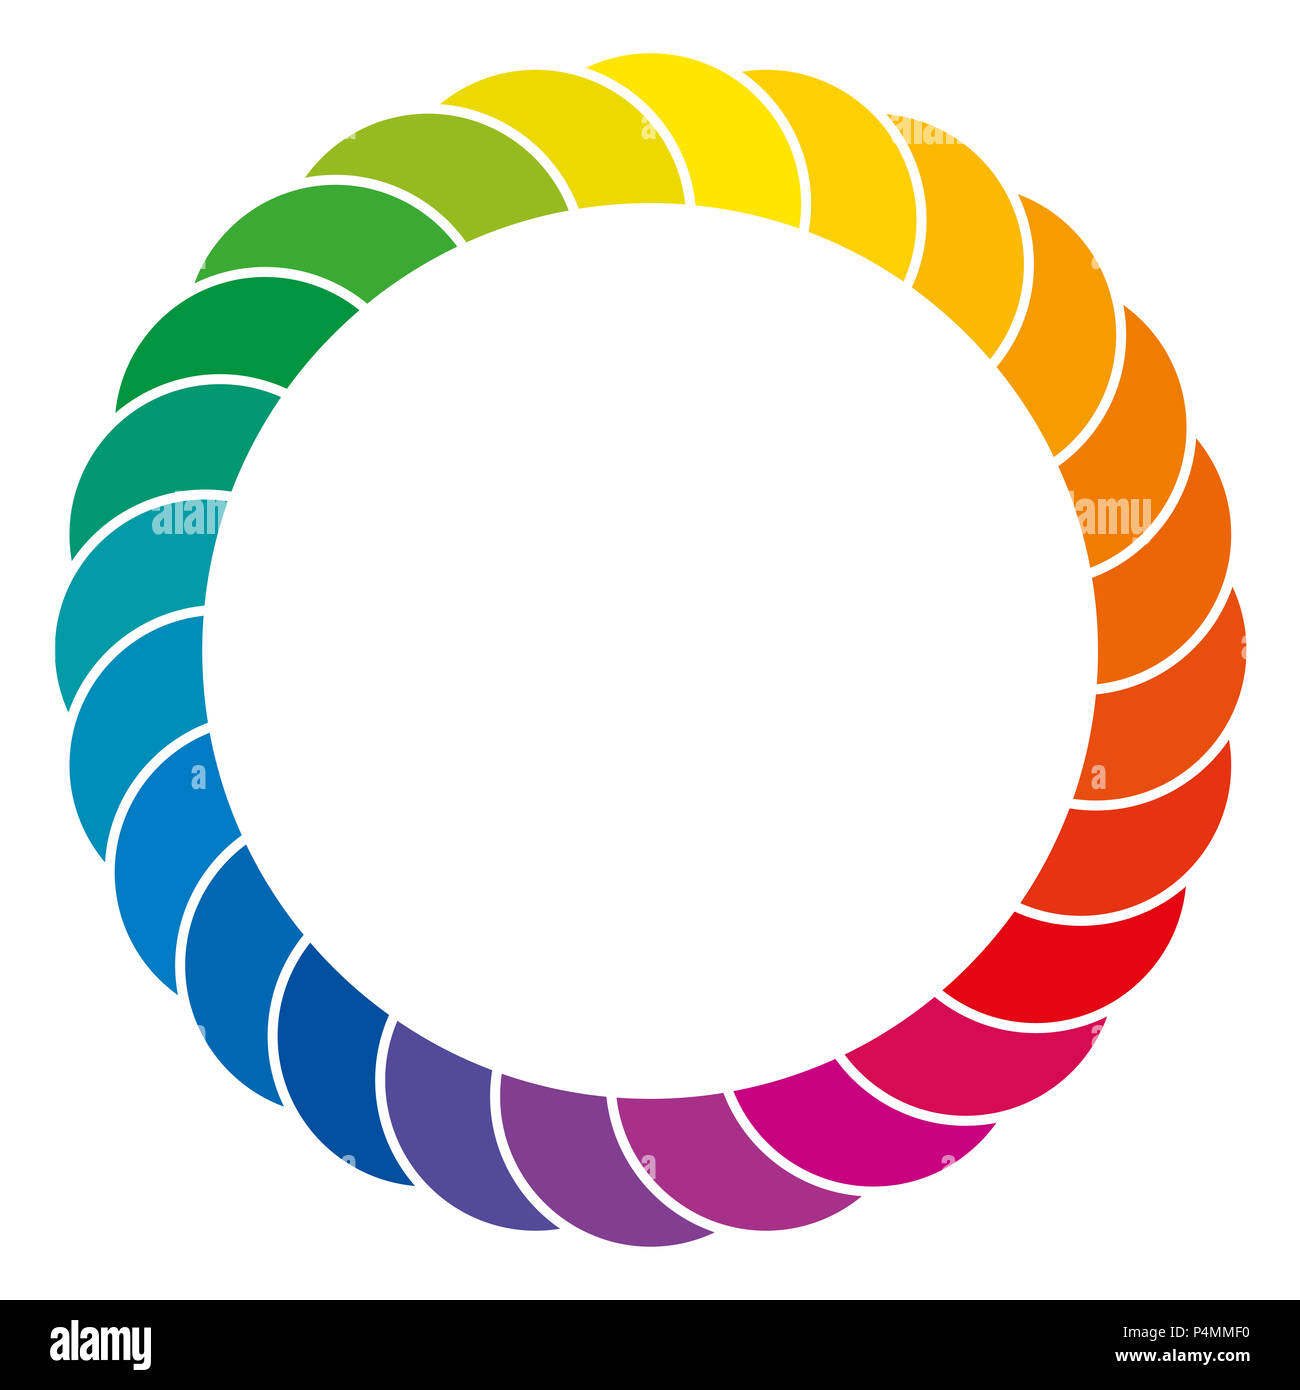 Regenbogen farbigen Hintergrund. Bunte Raum und Kreis aus sich überlappenden Segmenten des Farbspektrums, durch weiße Linien getrennt. Isoliert. Stockfoto